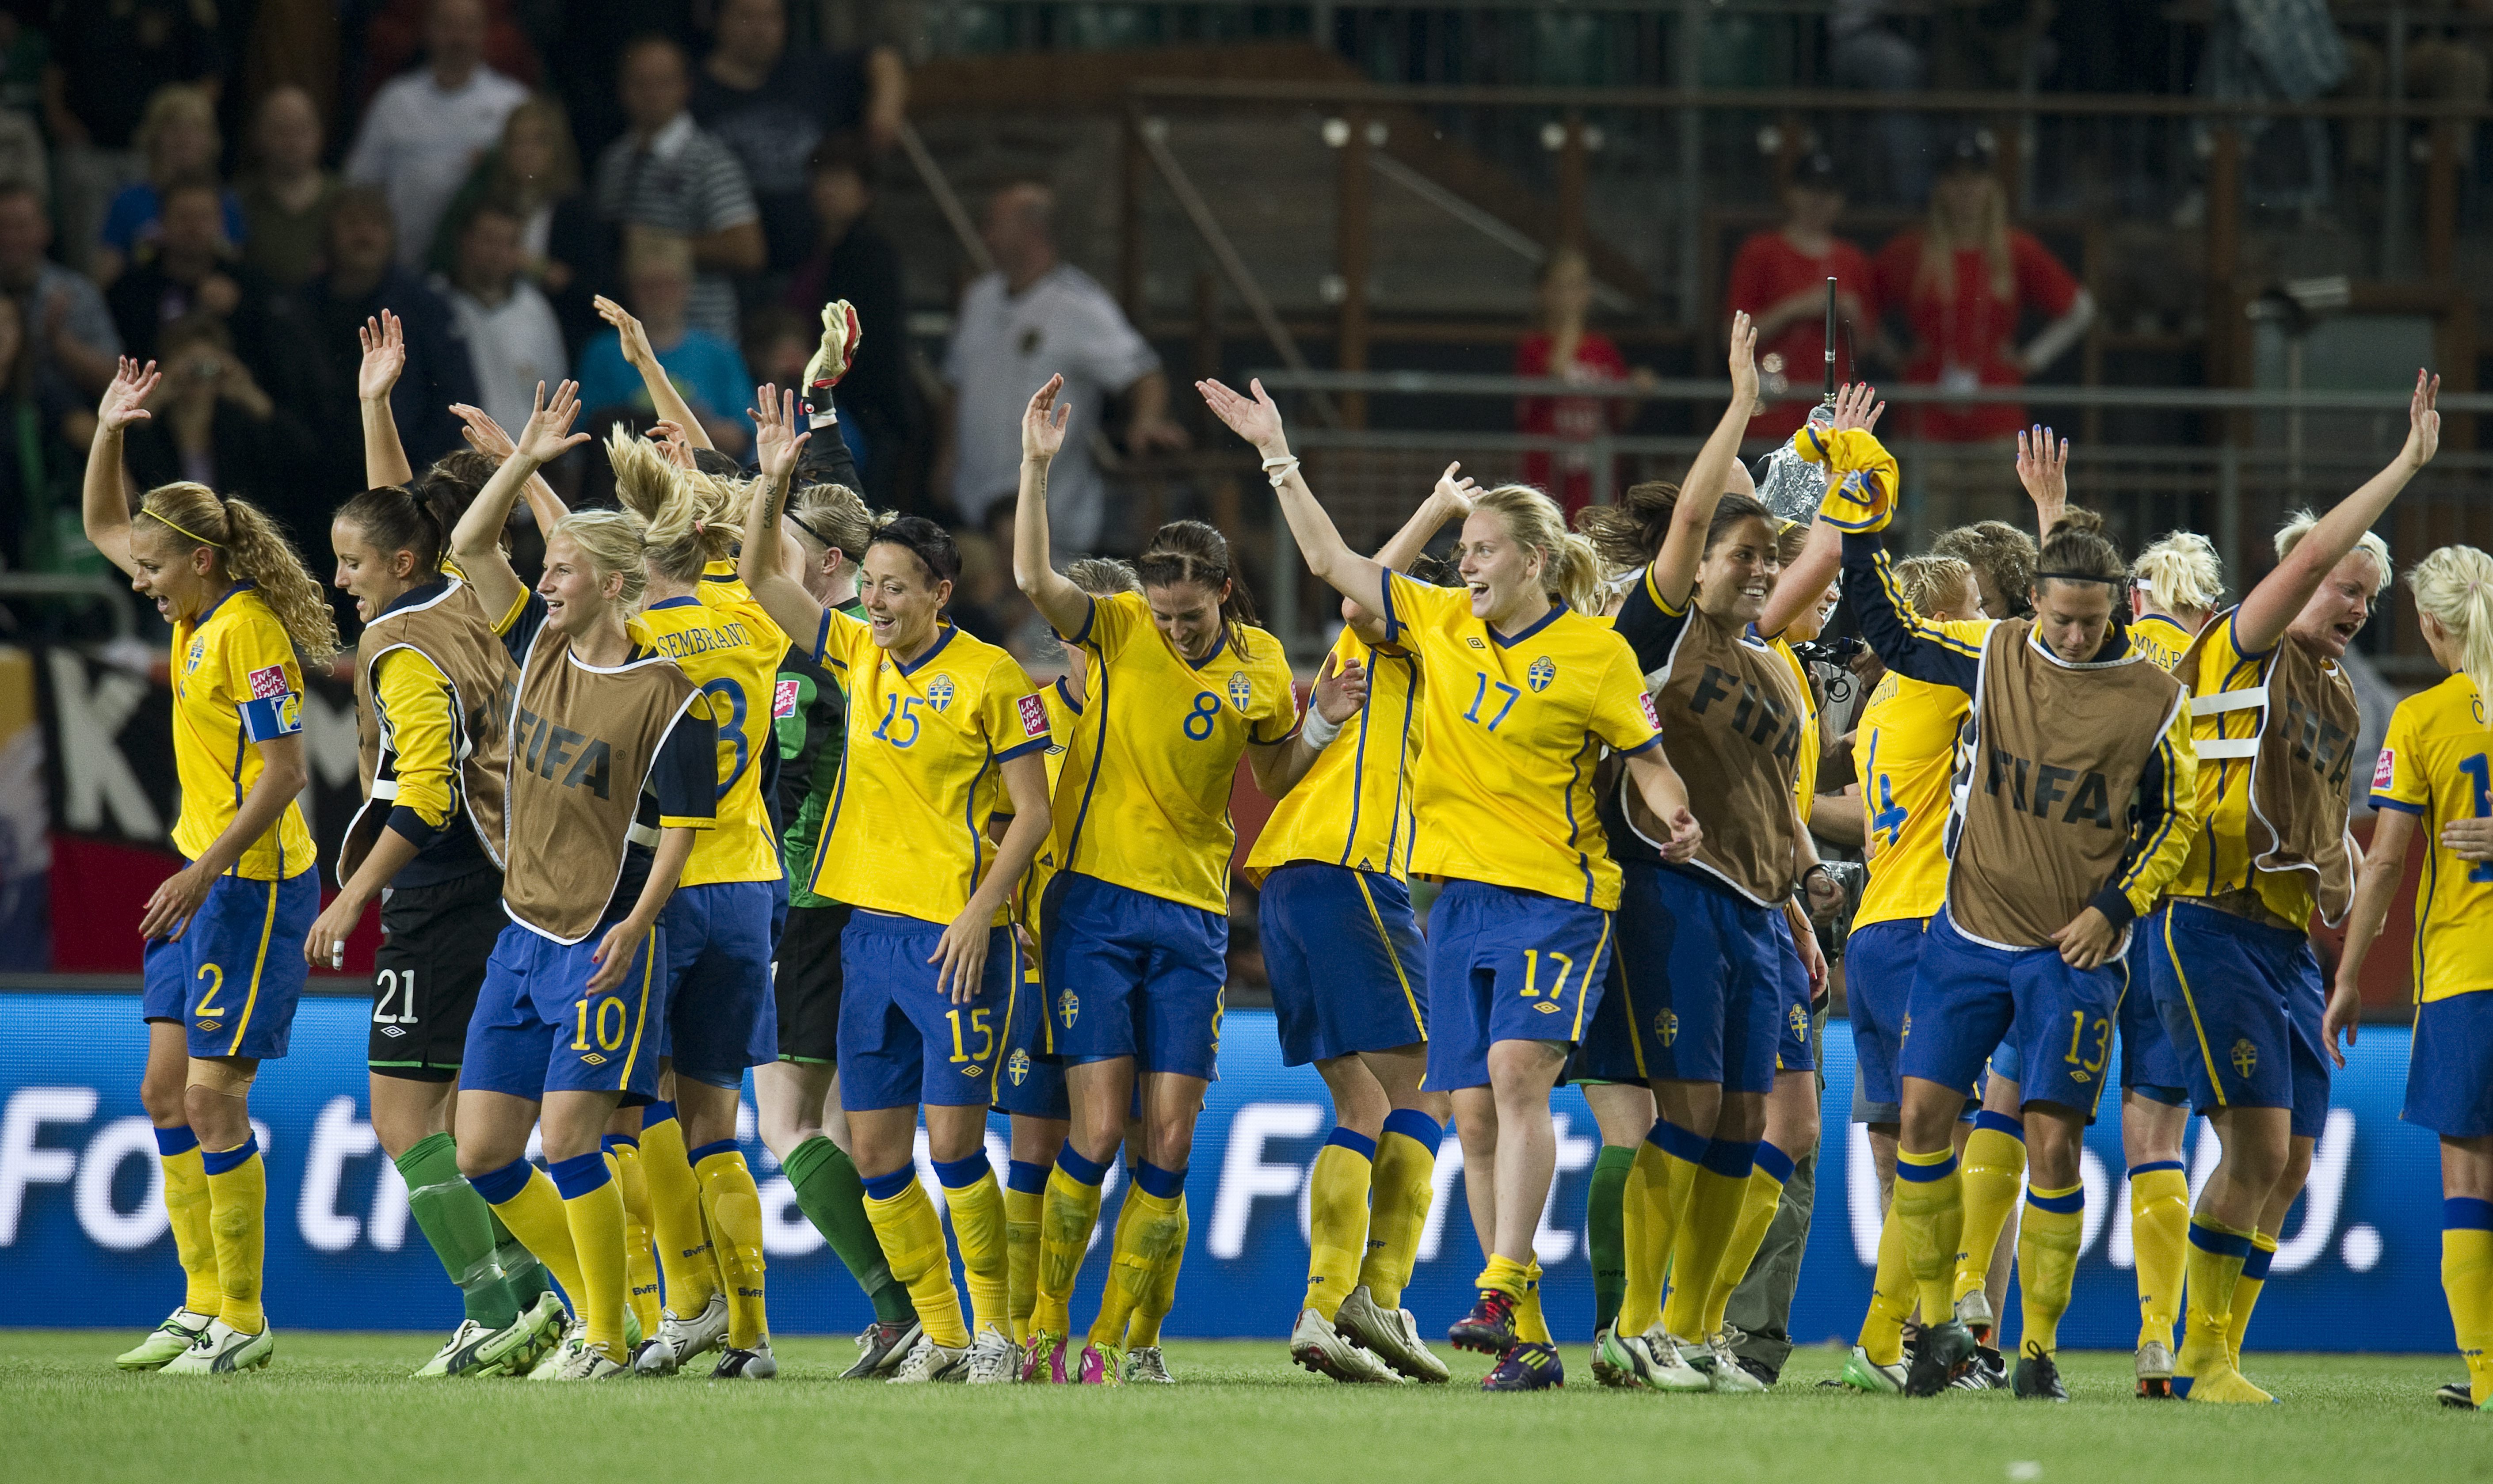 Fotboll, Sverige, Dam-VM, Landslaget, Lotta Schelin